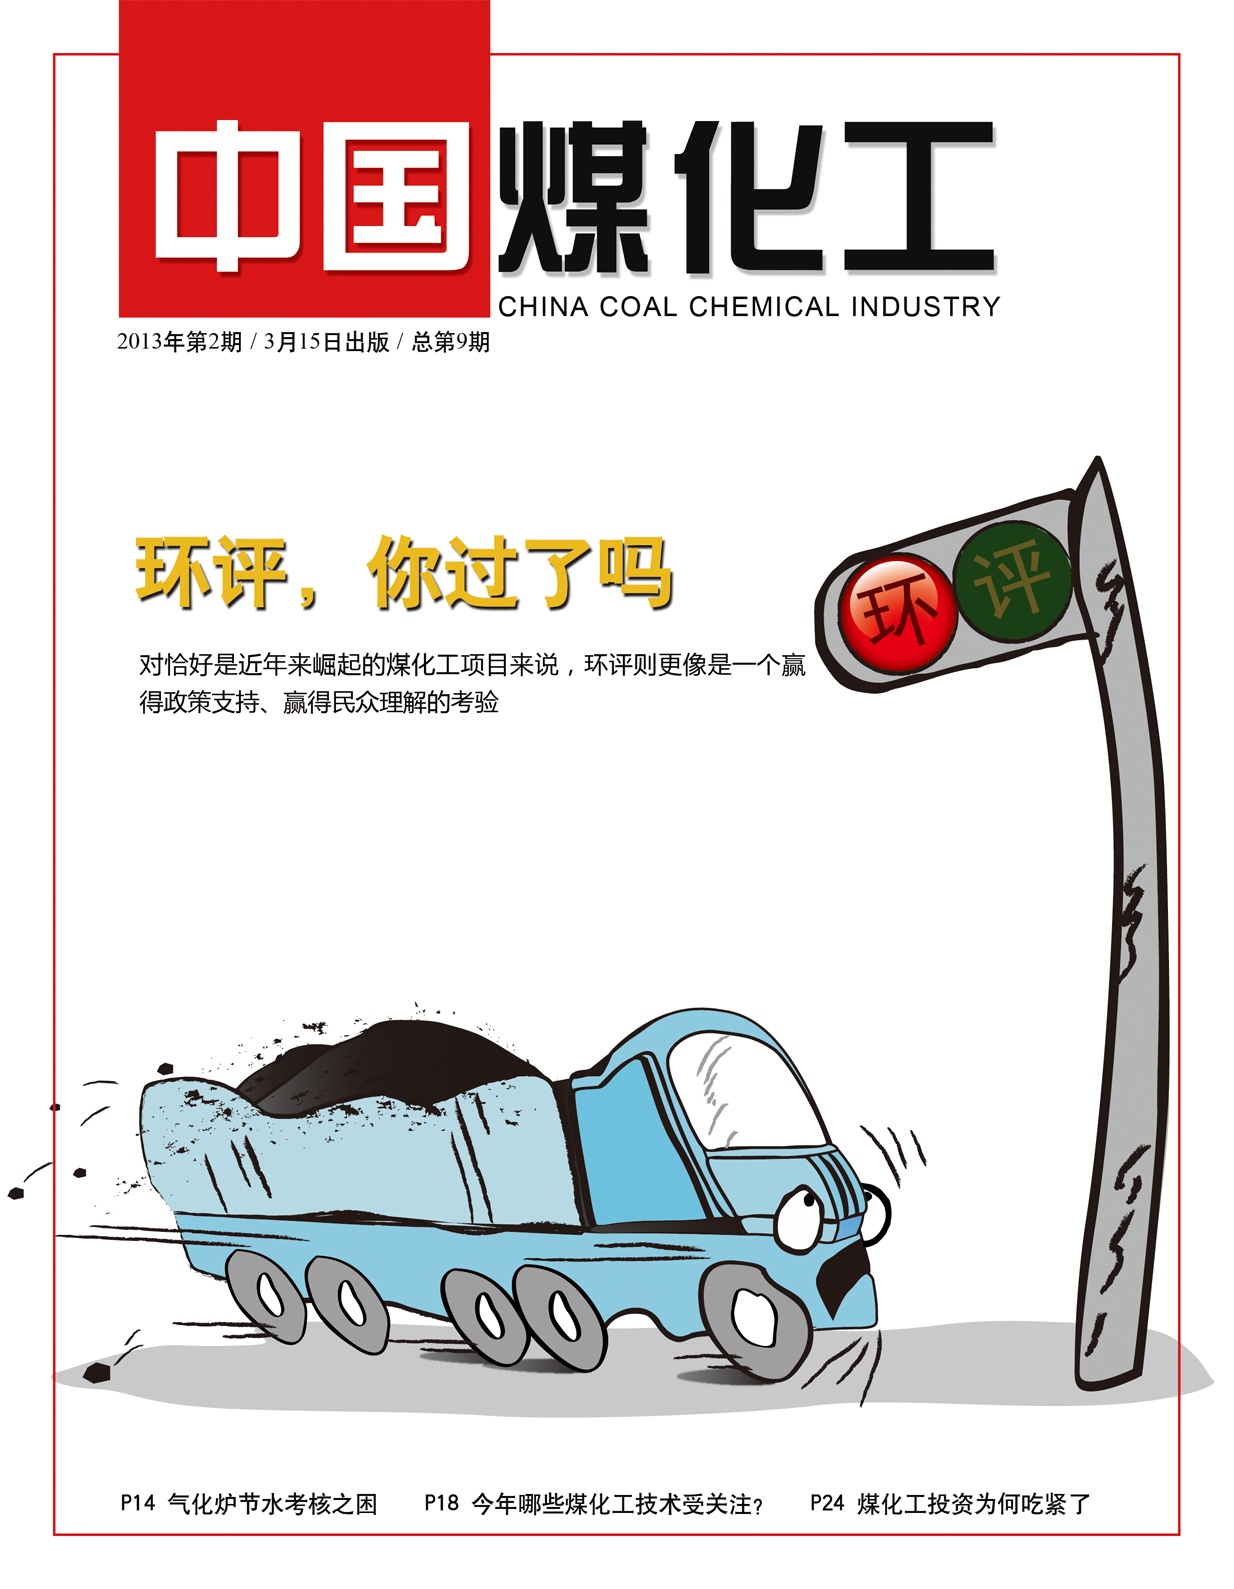 《中國煤化工》2013年第2期 總第9期封面